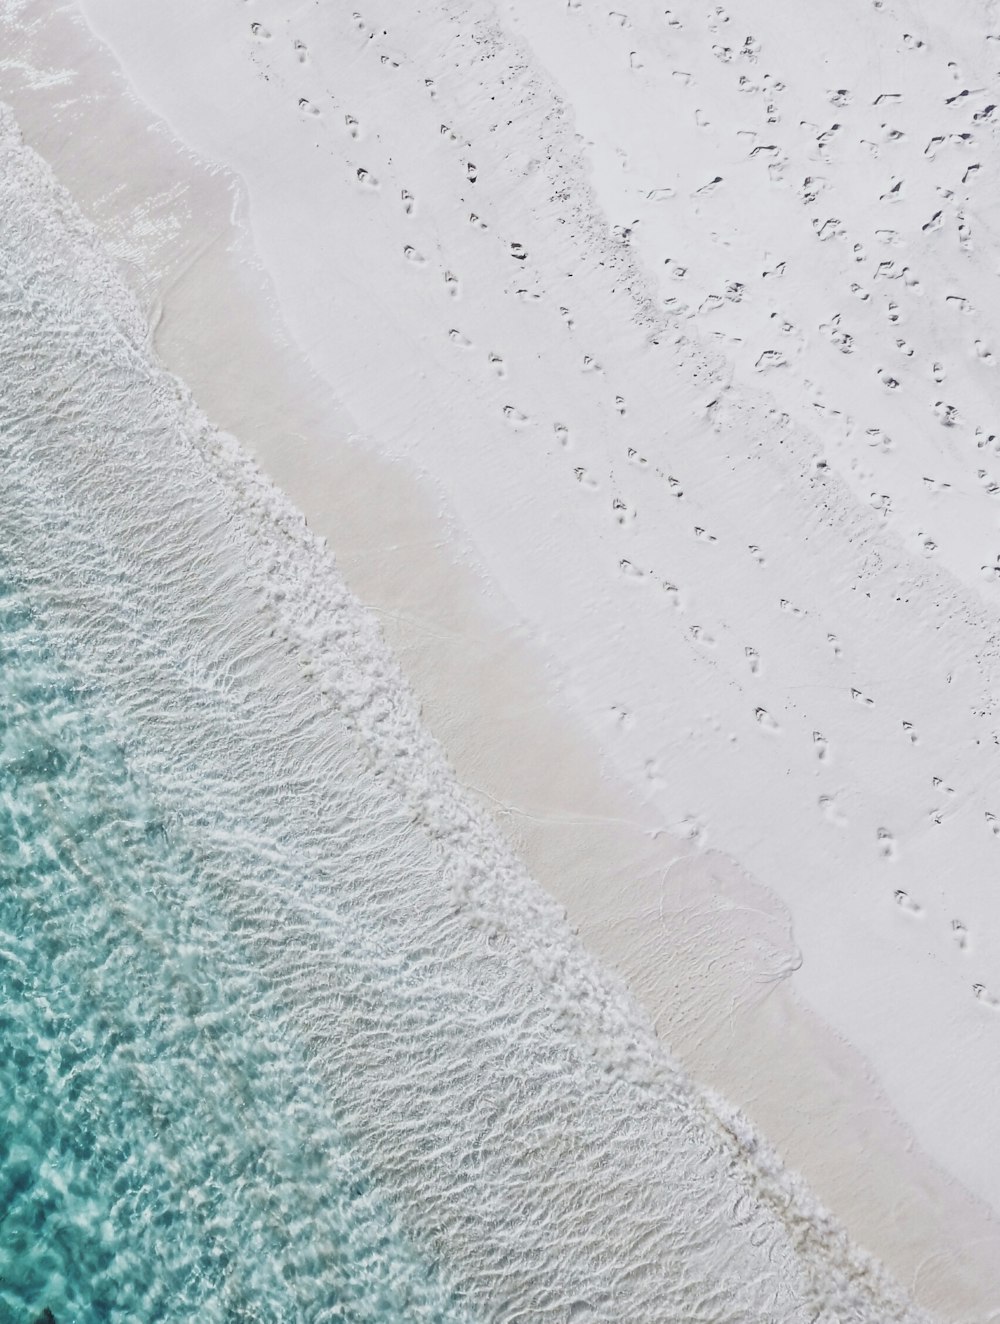 Fotografía aérea de la orilla del mar de arena blanca y la playa de agua verde